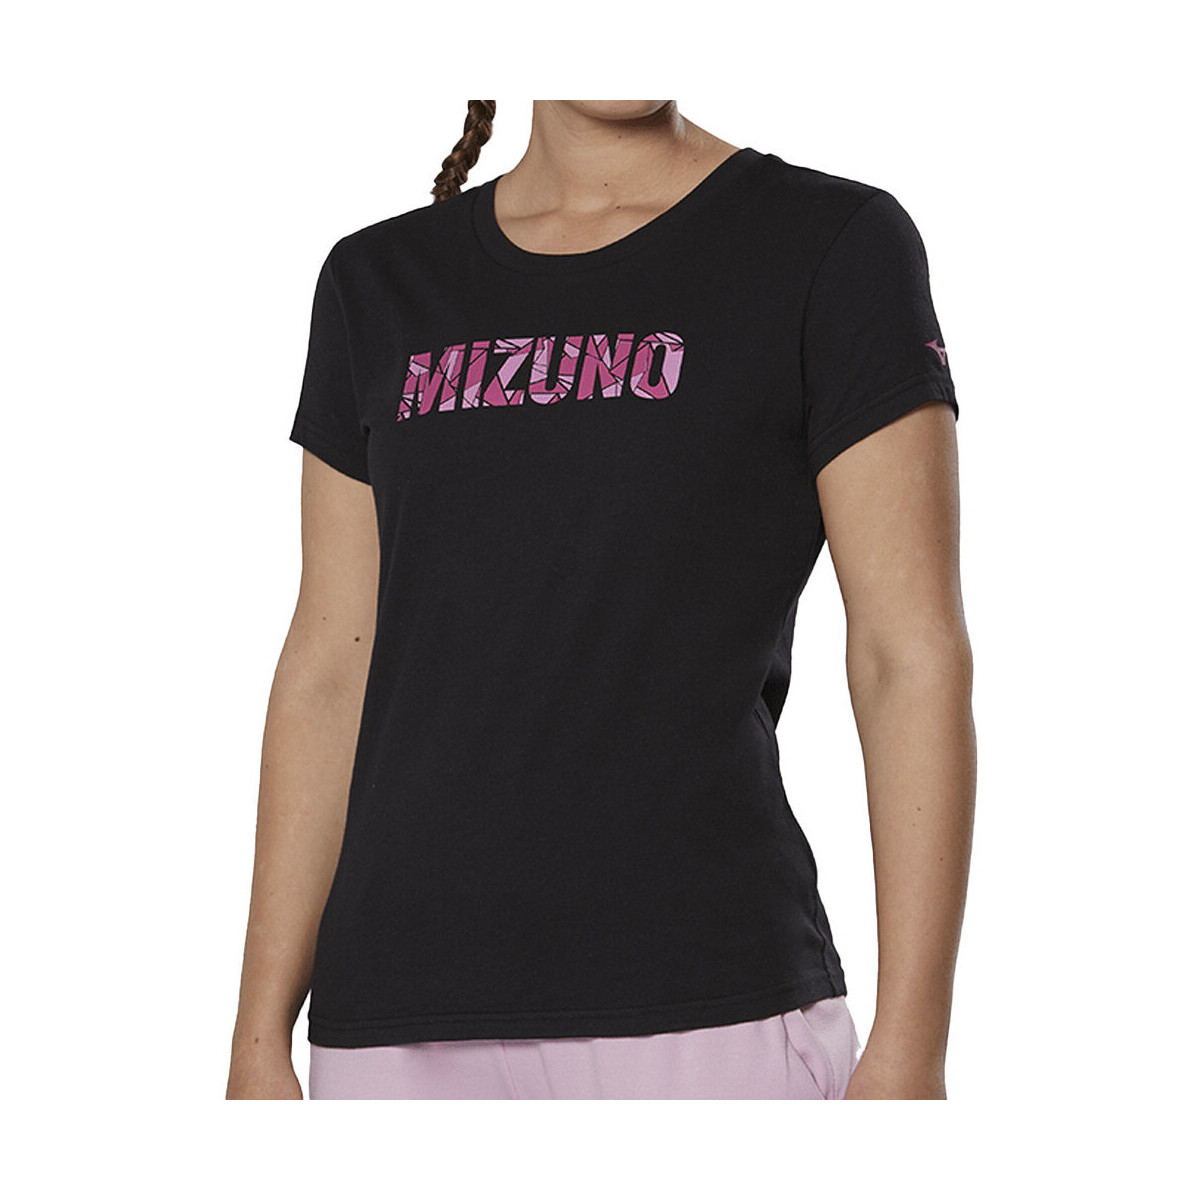 Vêtements Femme Mizuno Flex Motocykle Wzbudnicy K2GA2202-09 Noir